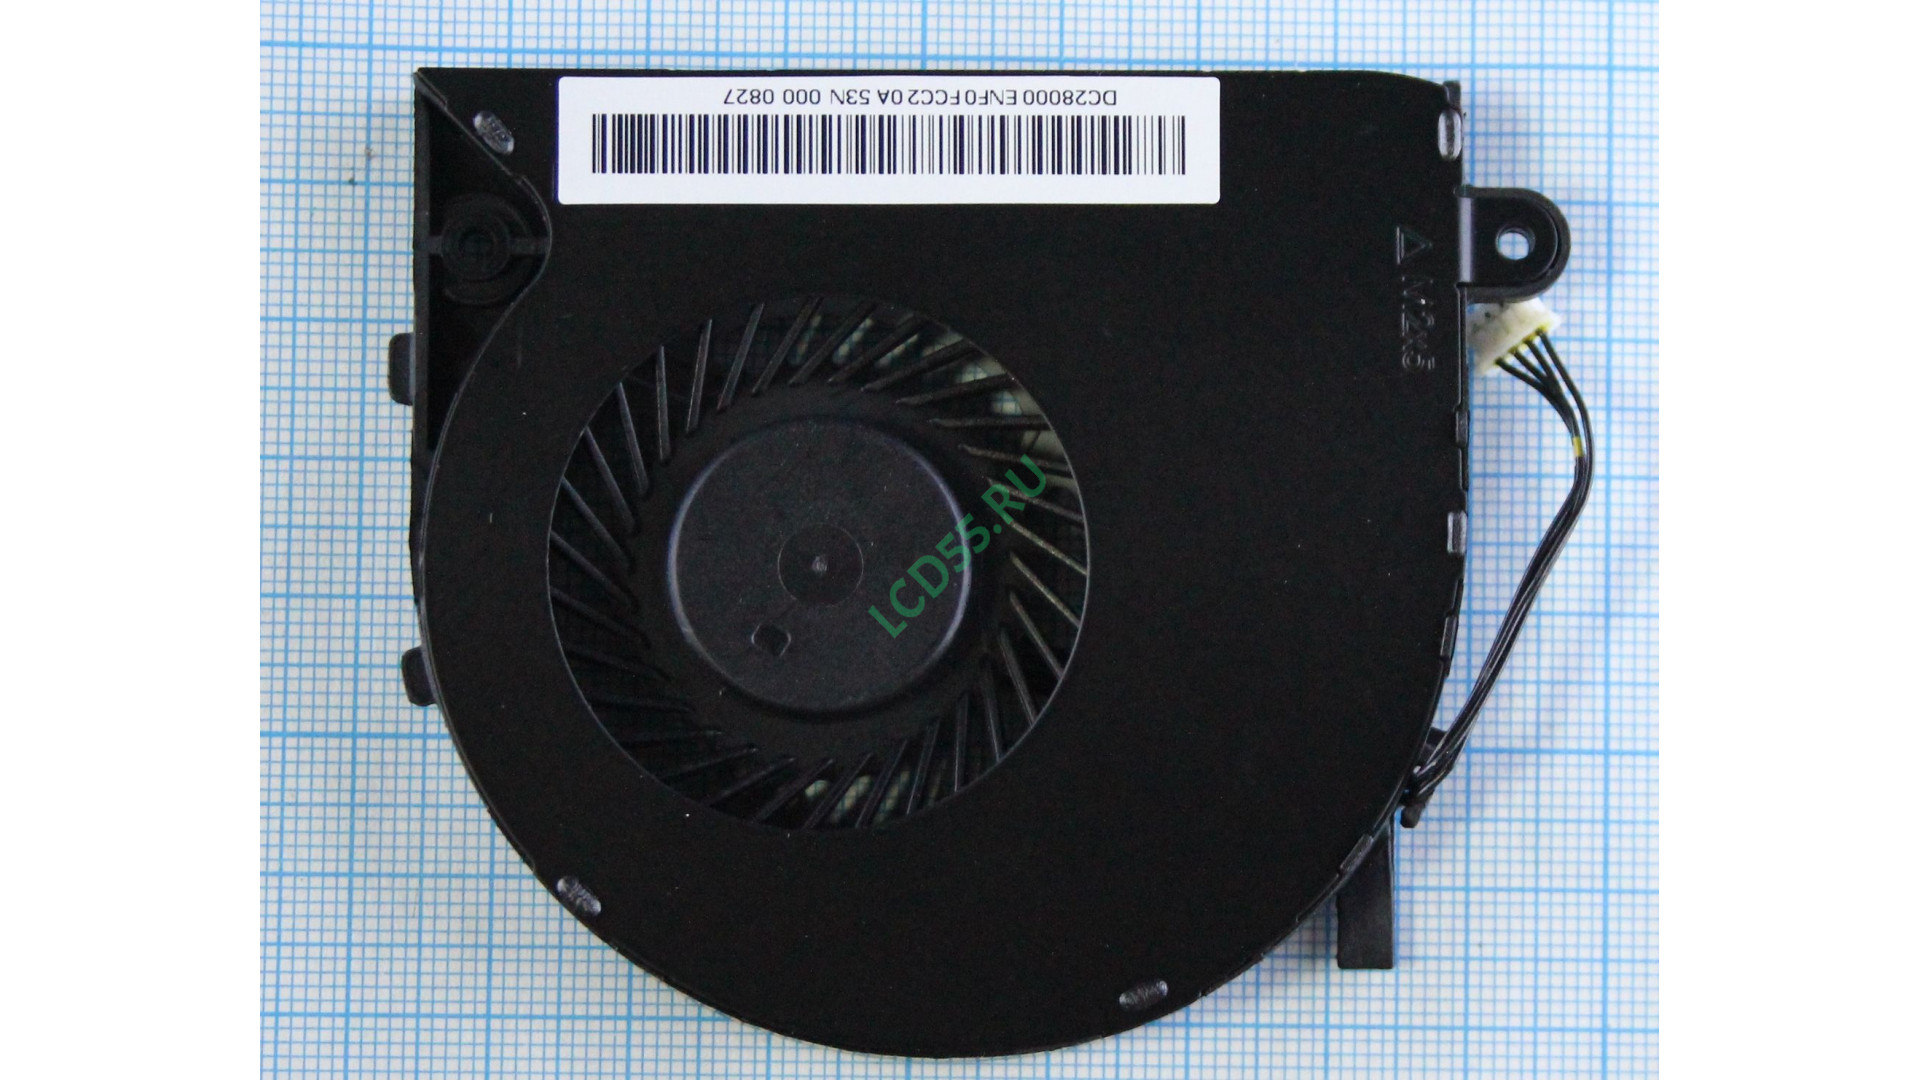 Вентилятор Lenovo Ideapad B40-30, B50-30, B40-45, B50-70, B50-80